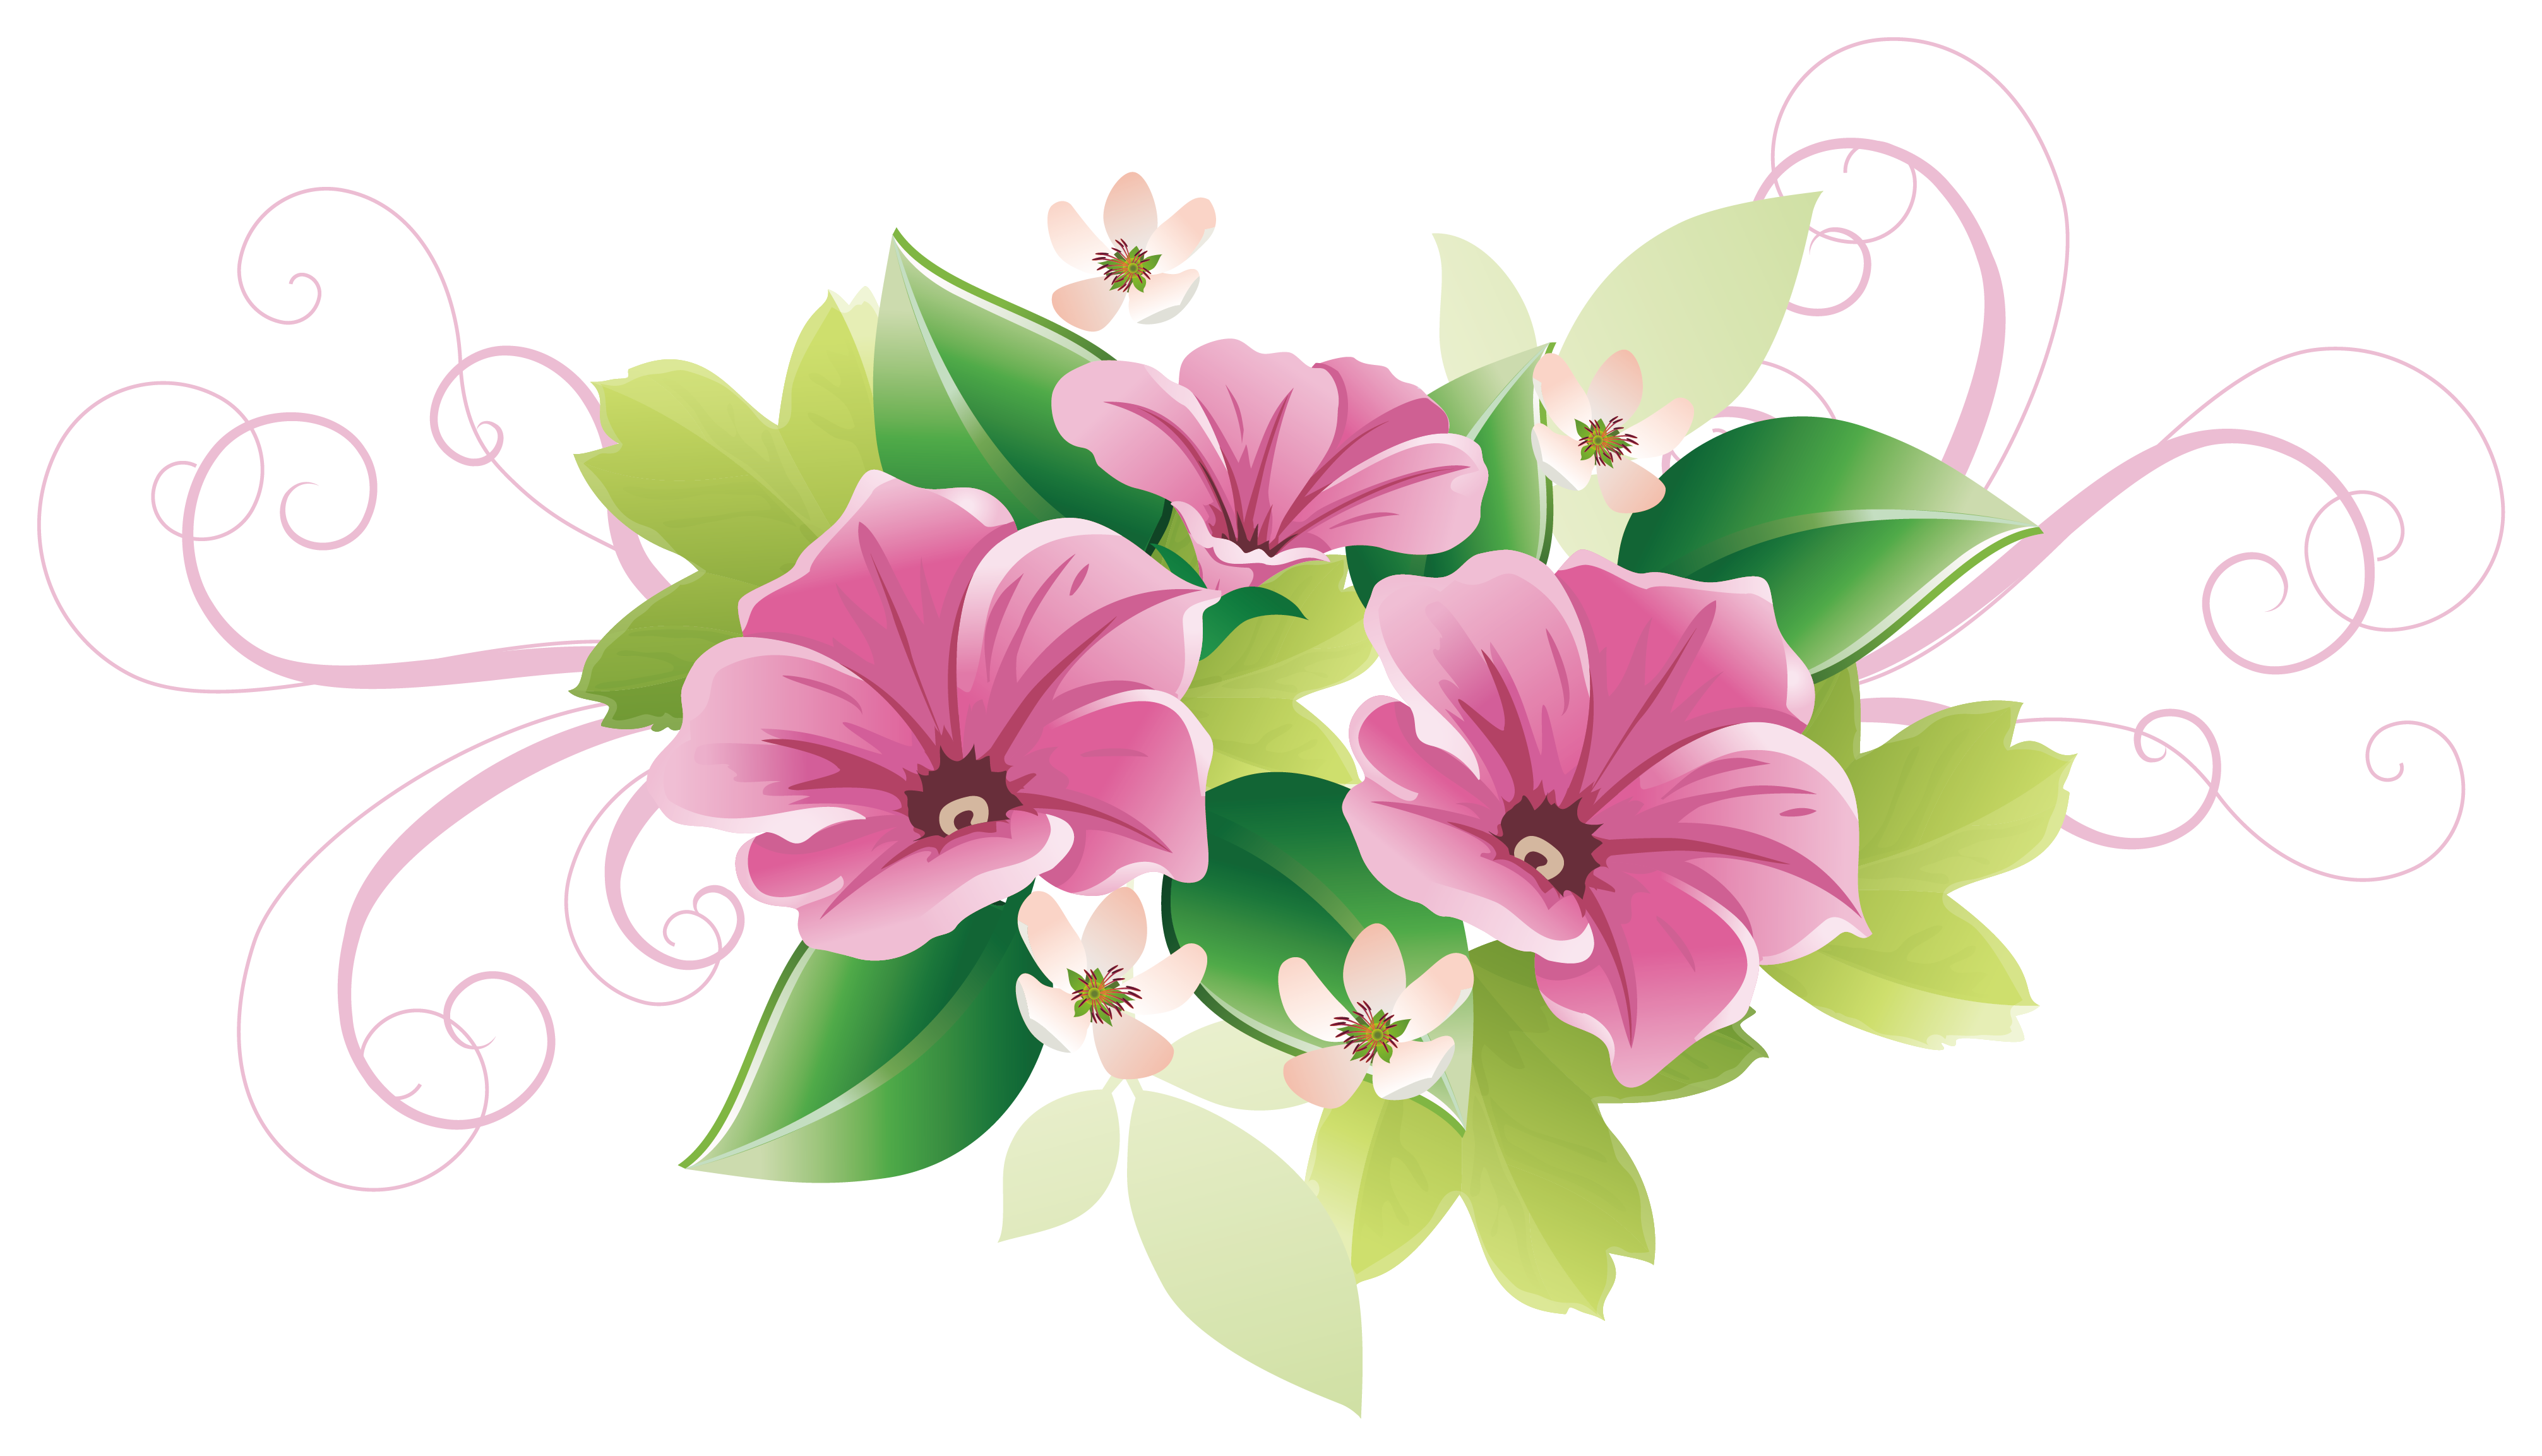 Decorative clipart decoration. Floral design flower arts